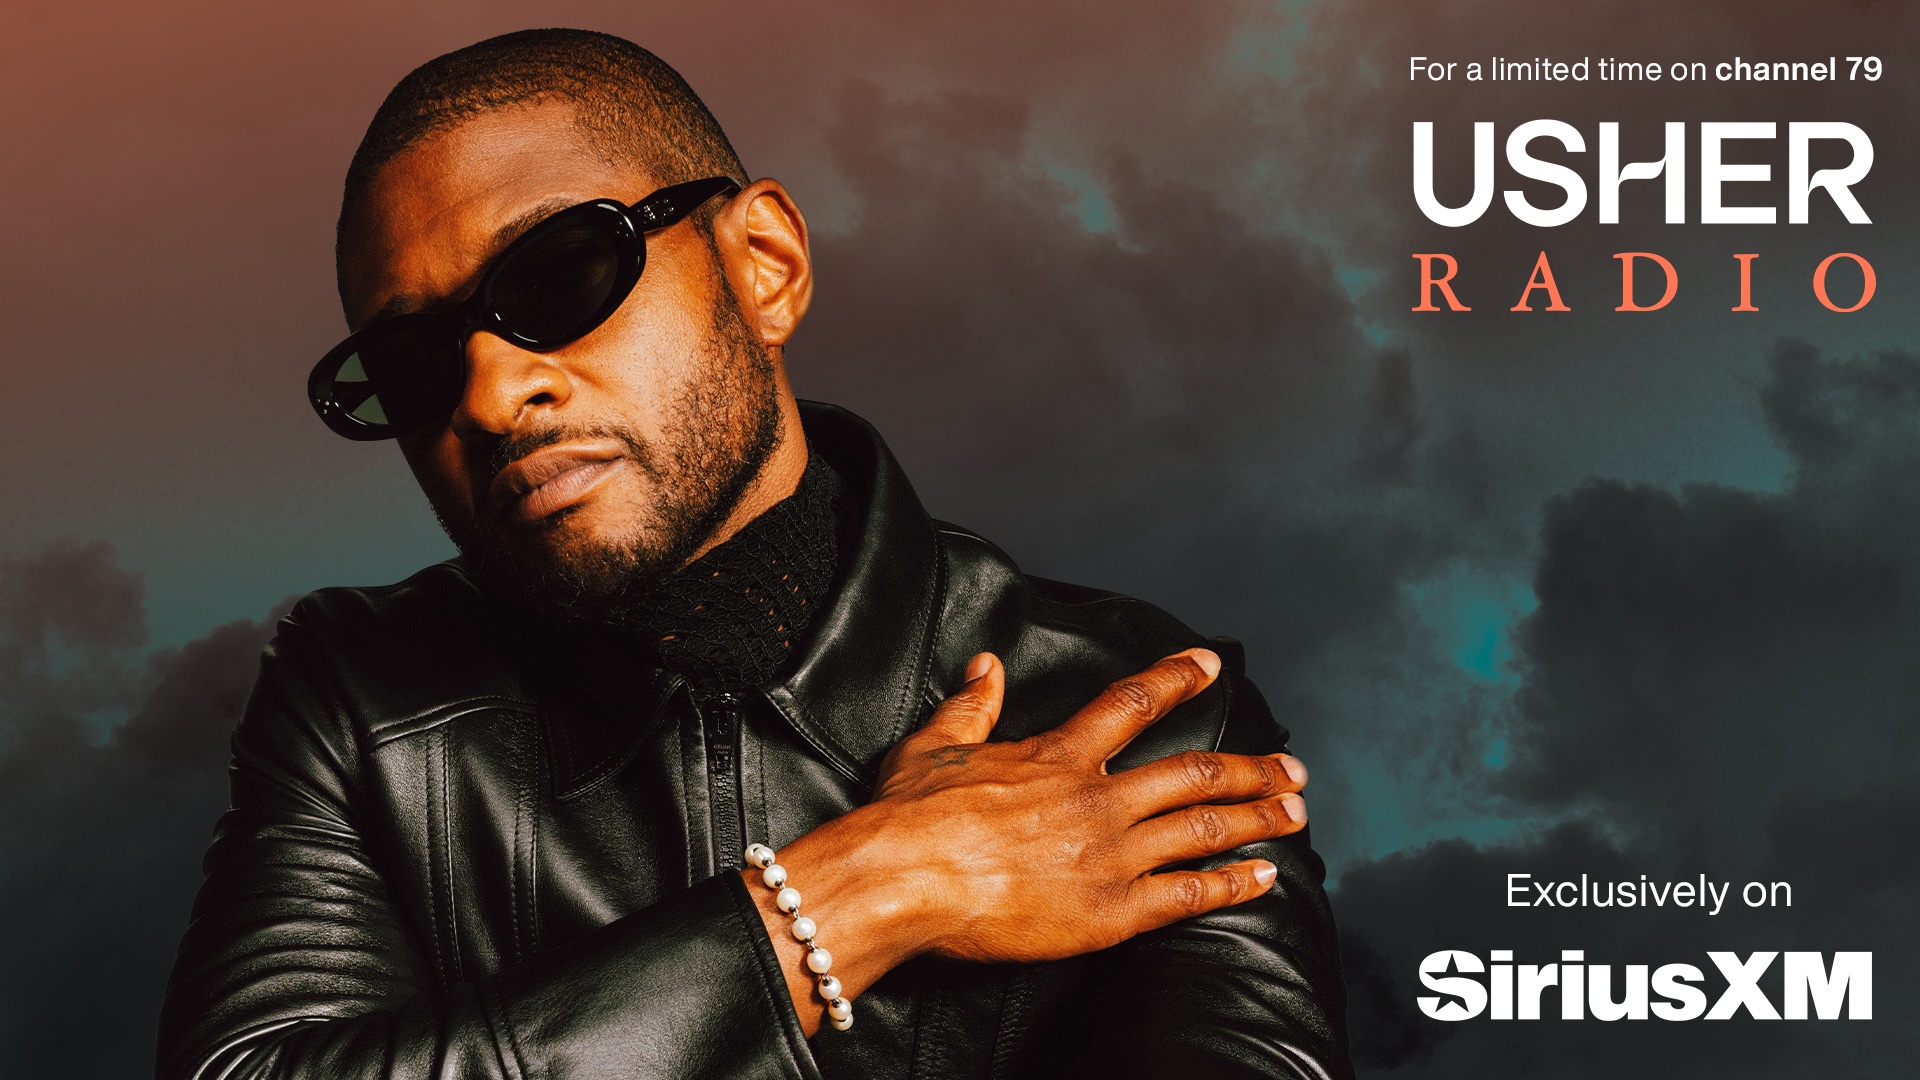 Usher Radio on SiriusXM - 16x9